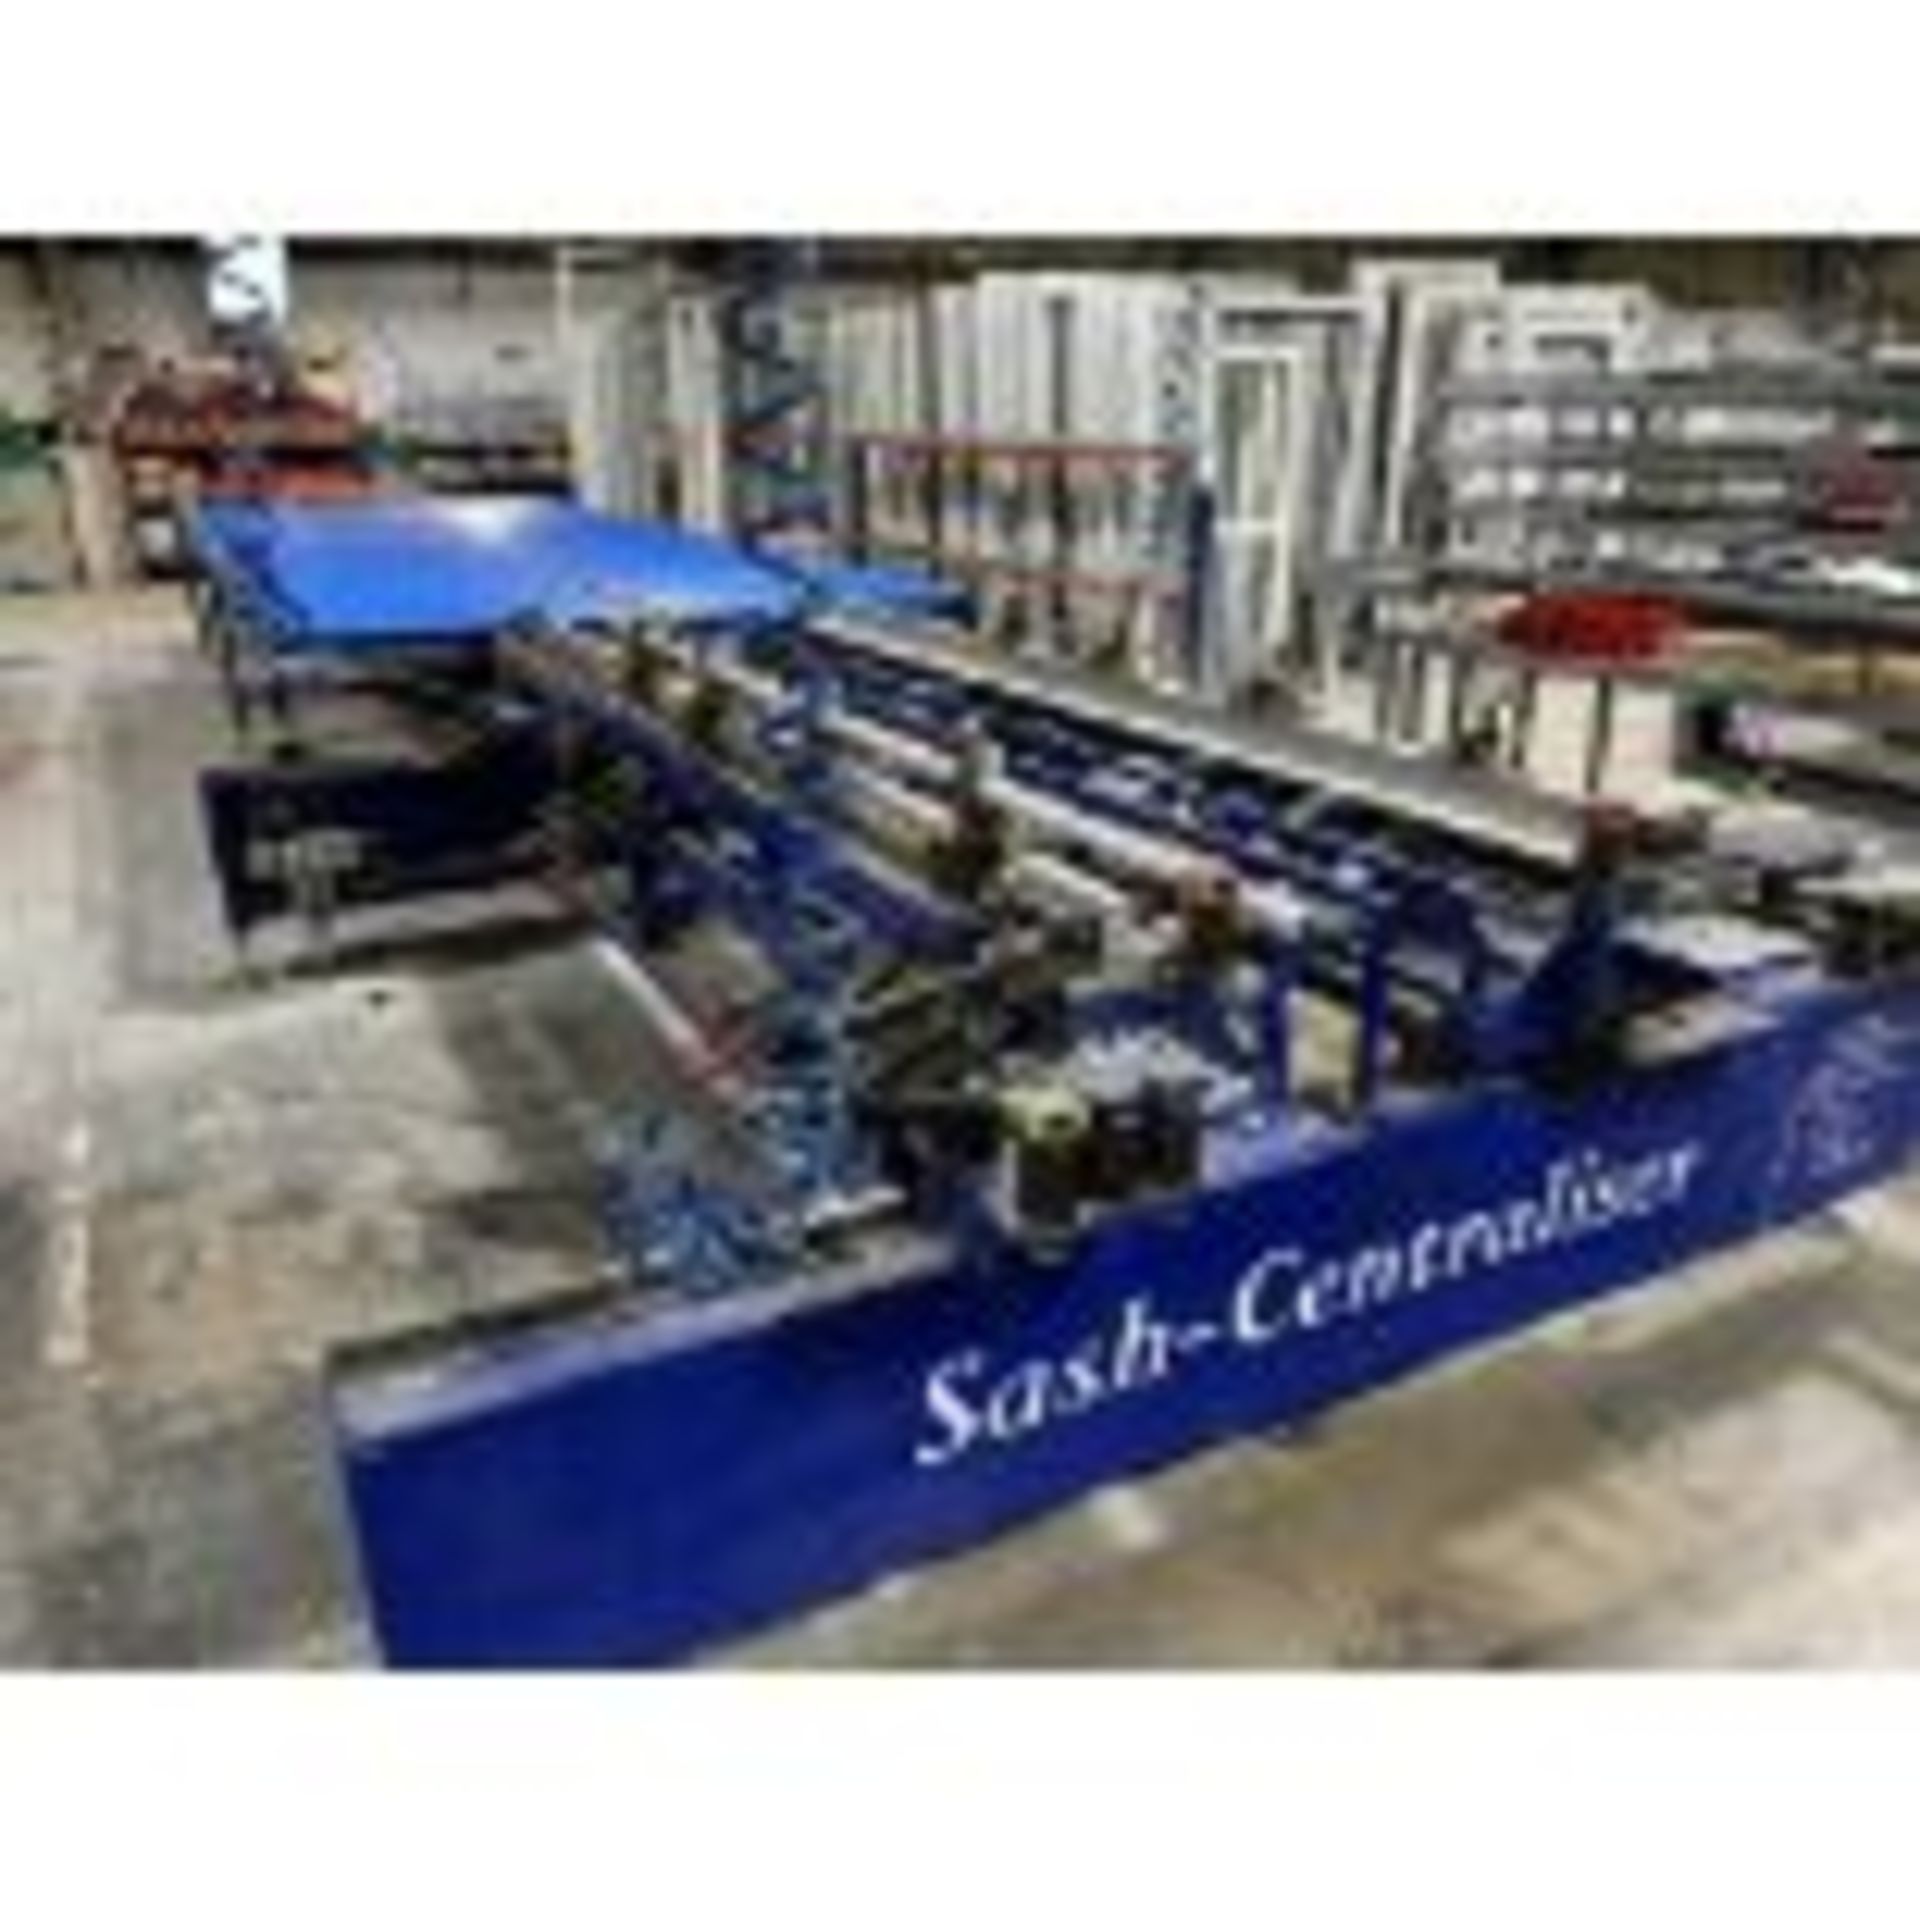 1 x FW Frost Engineers Sash-Centrilser Door Jig with Associated Gravity Roller Conveyors - Image 2 of 3